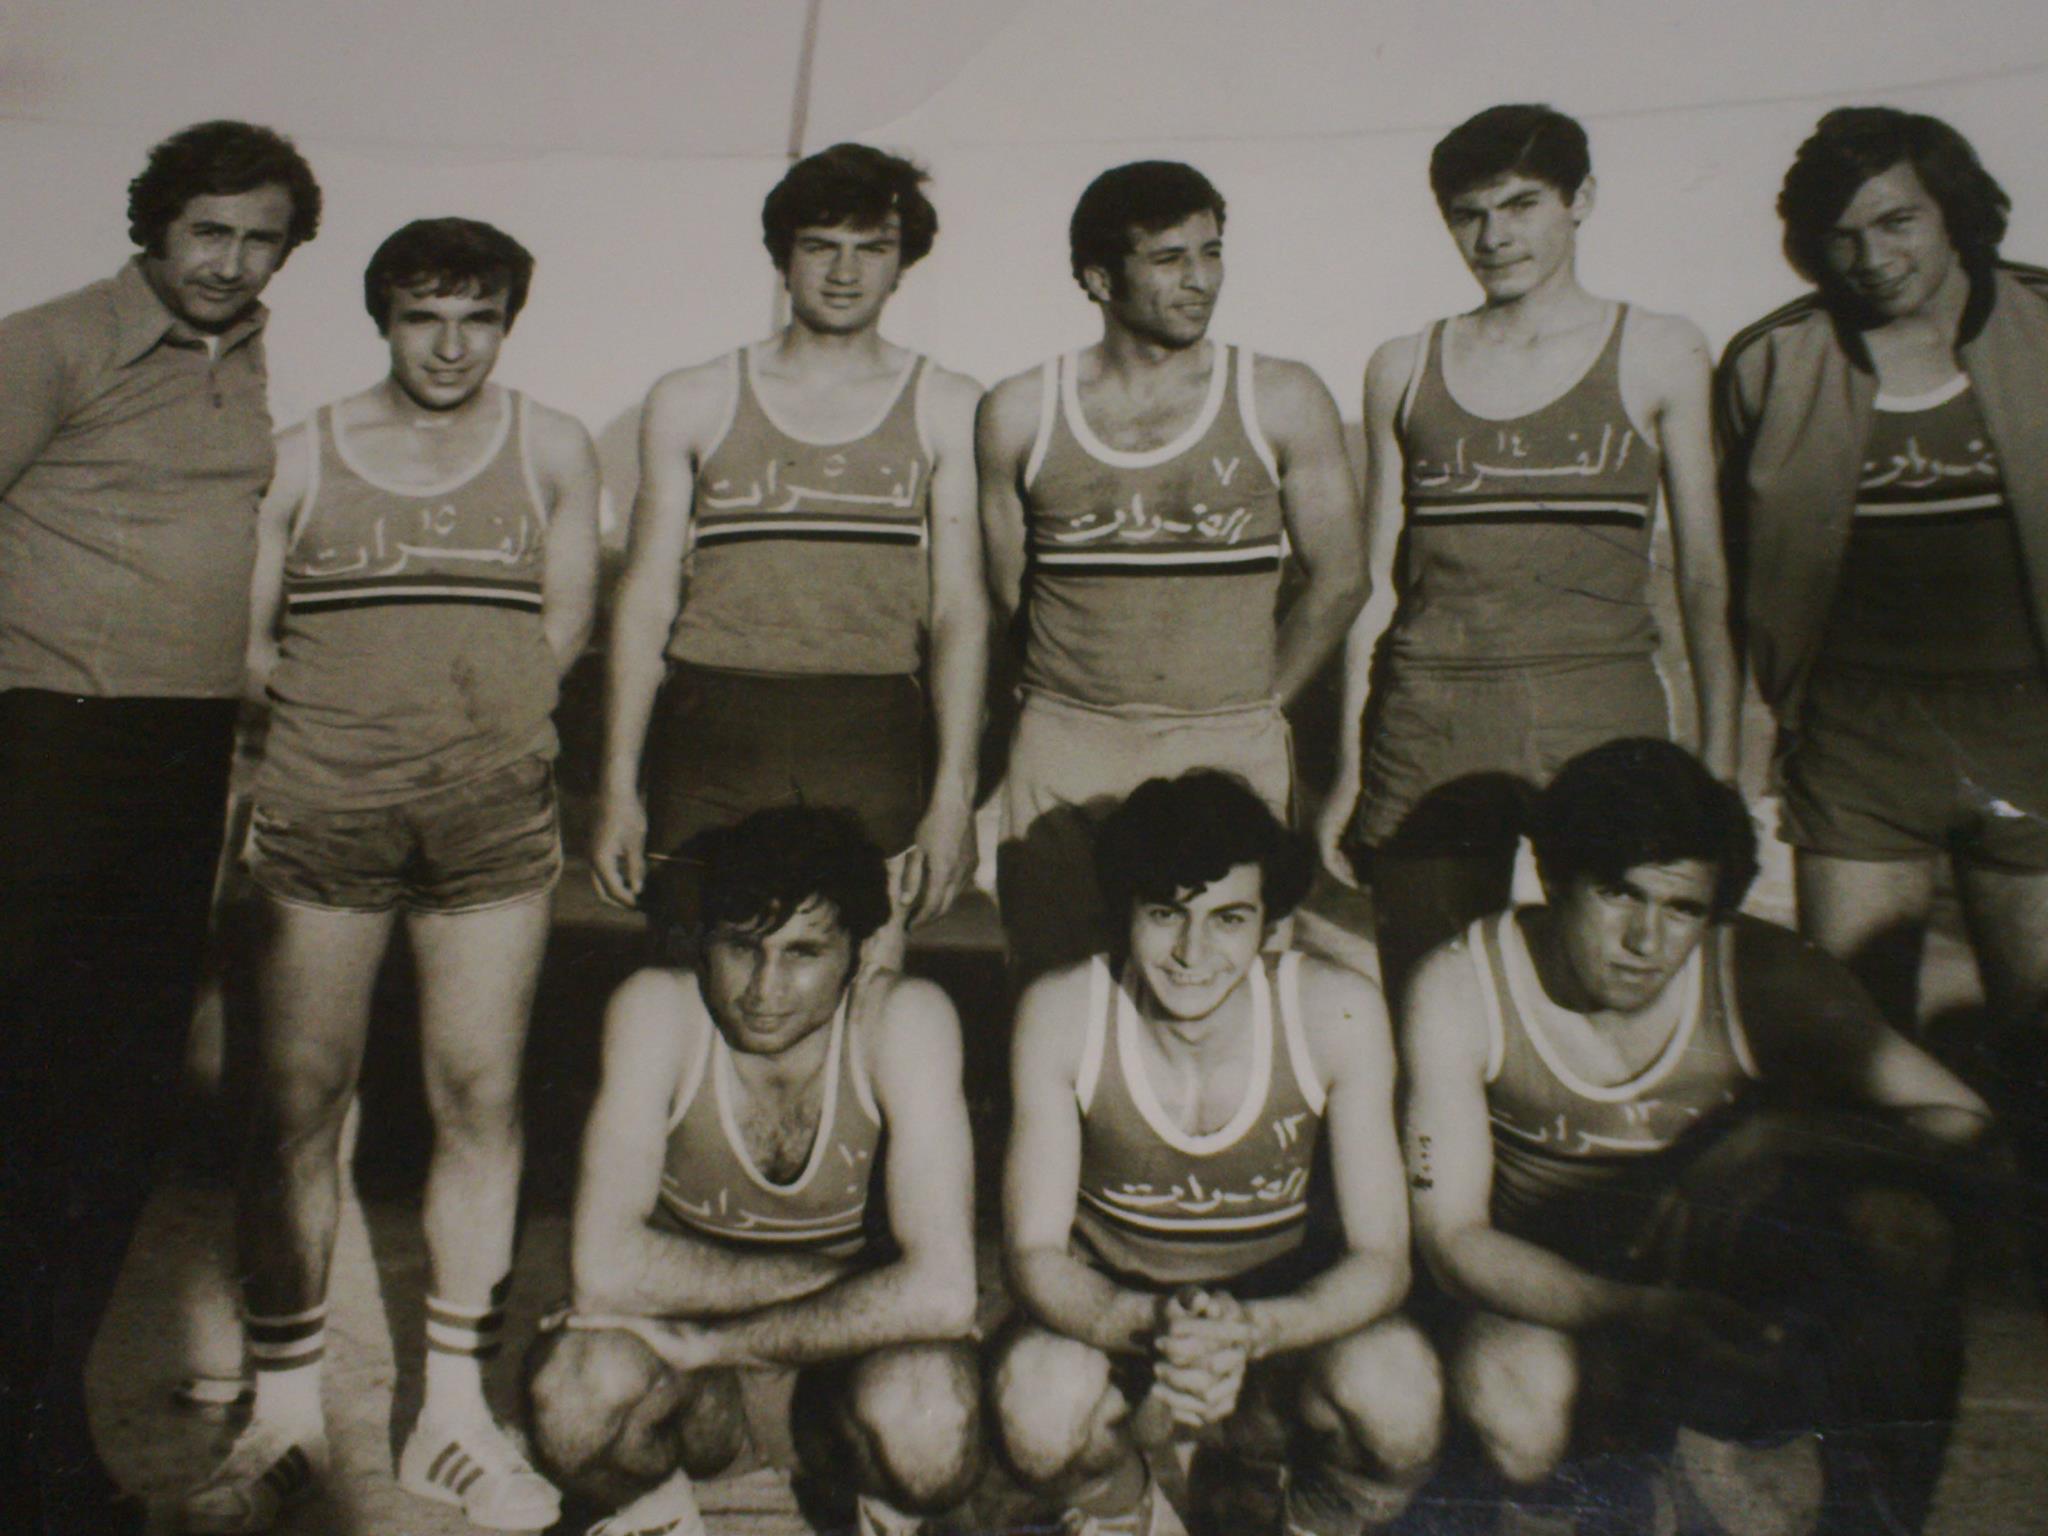 التاريخ السوري المعاصر - فريق نادي الفرات في كرة السلة في دير الزور عام 1978